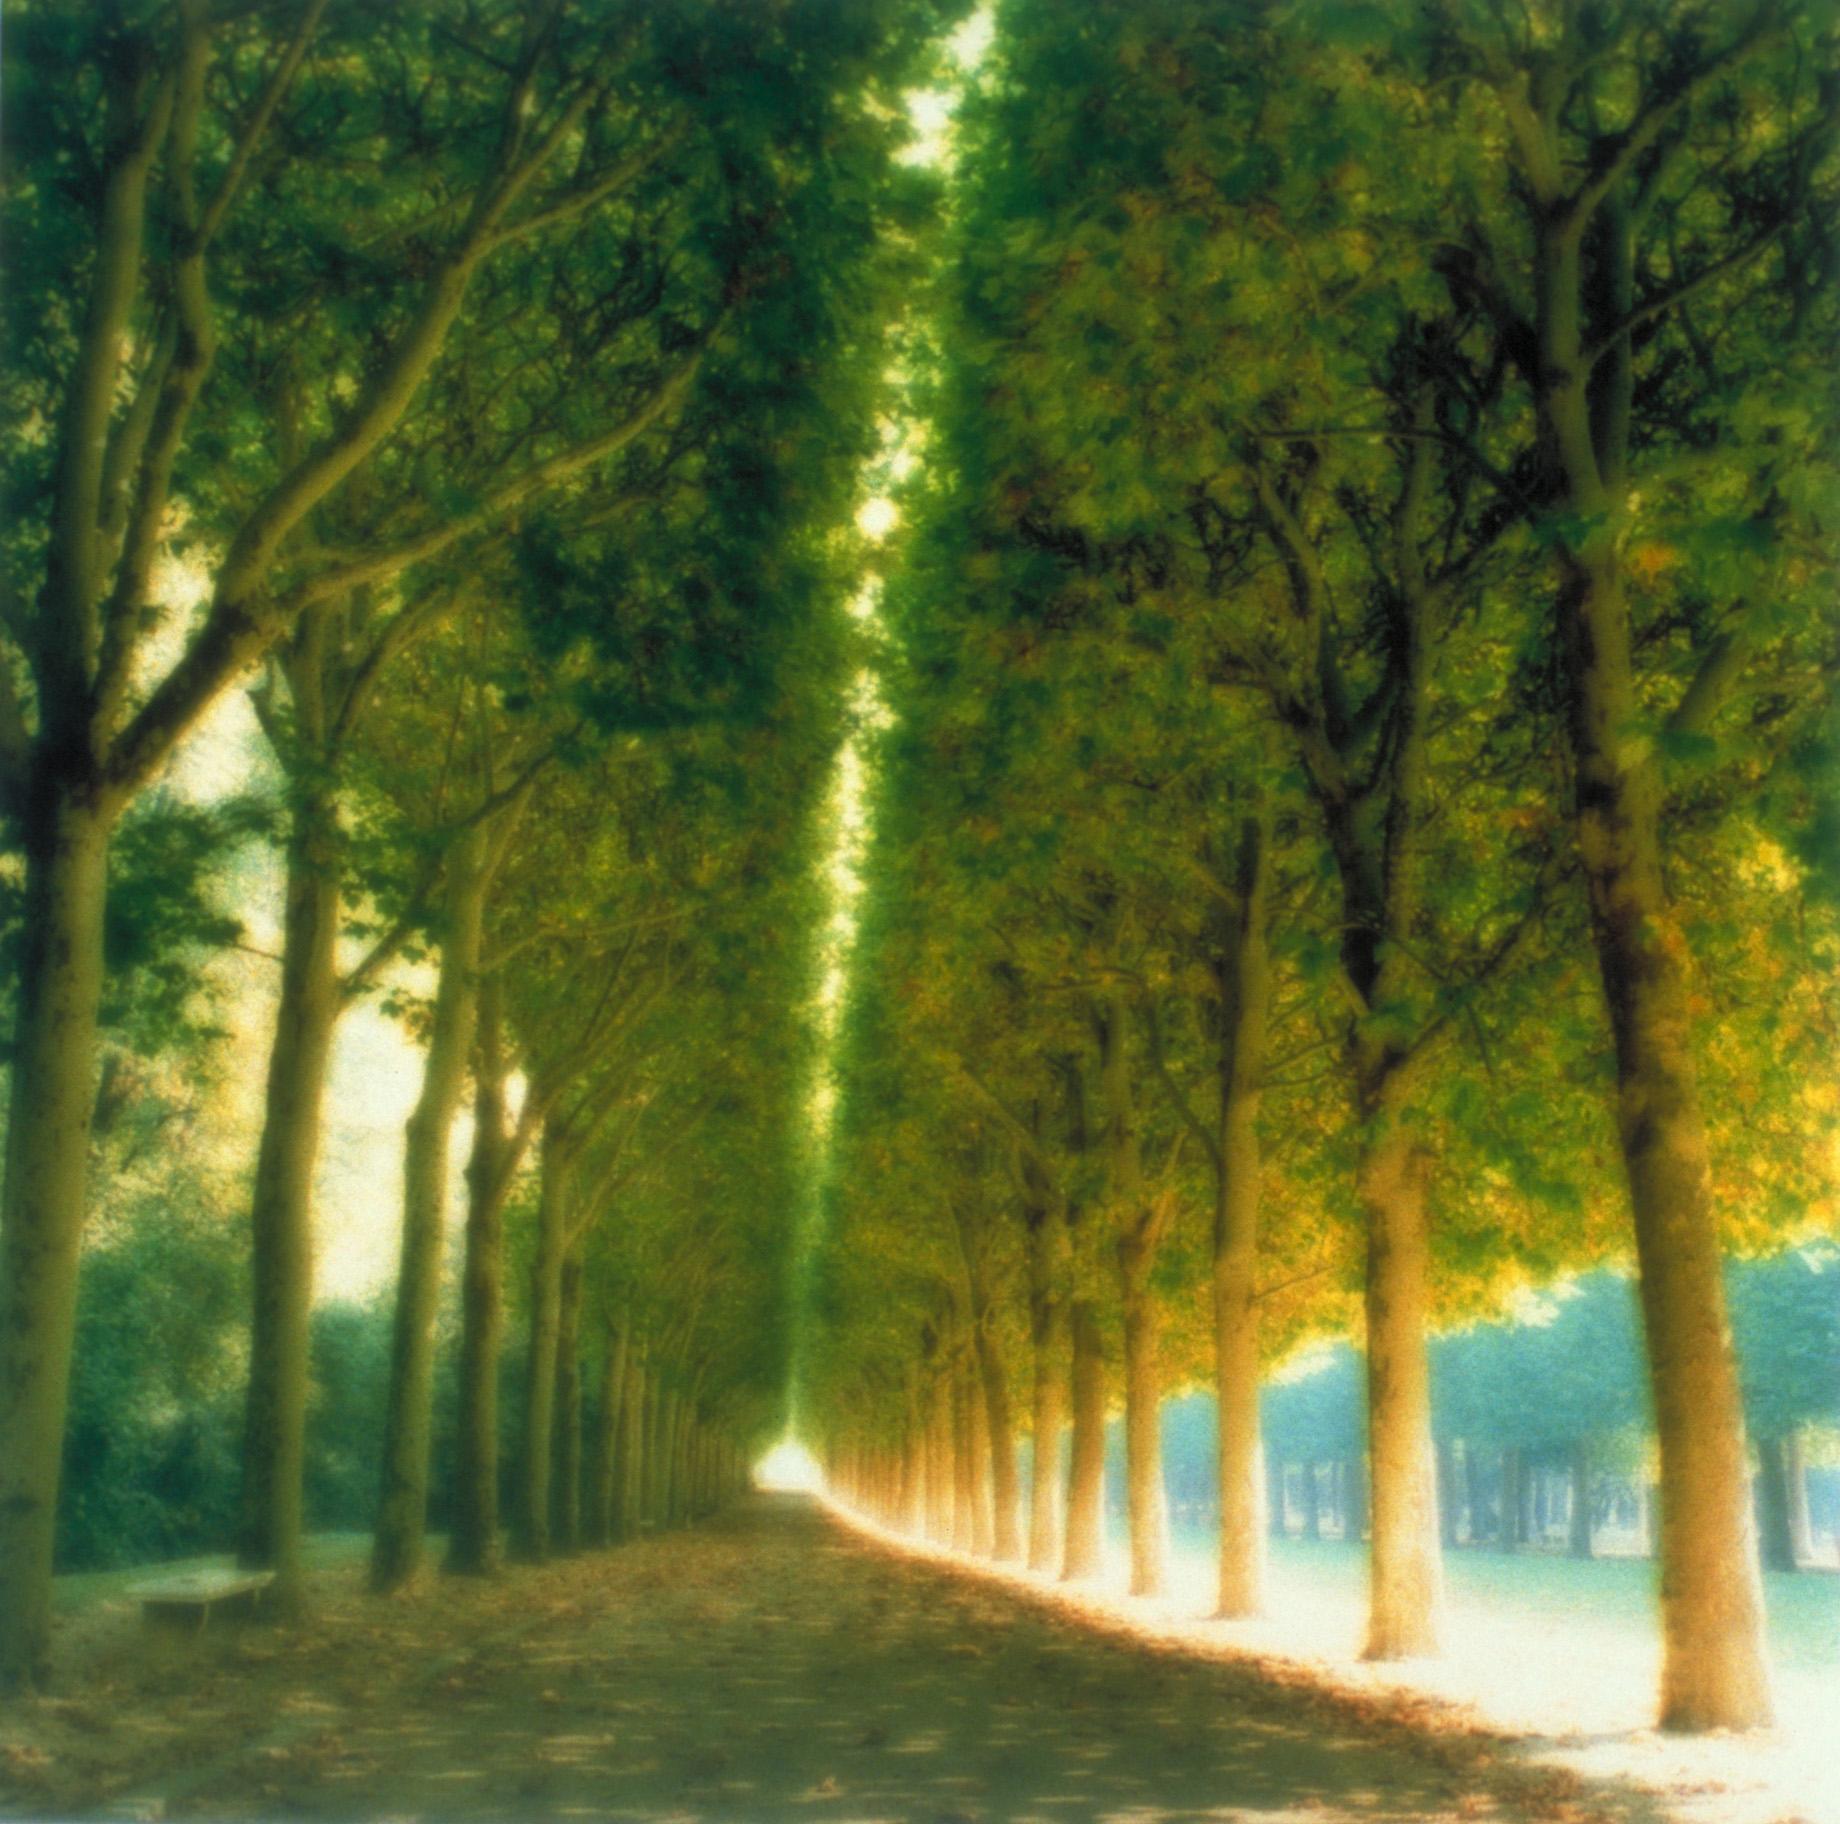 Lynn Geesaman Color Photograph - Parc de Sceaux, France (10-97-7c-8)